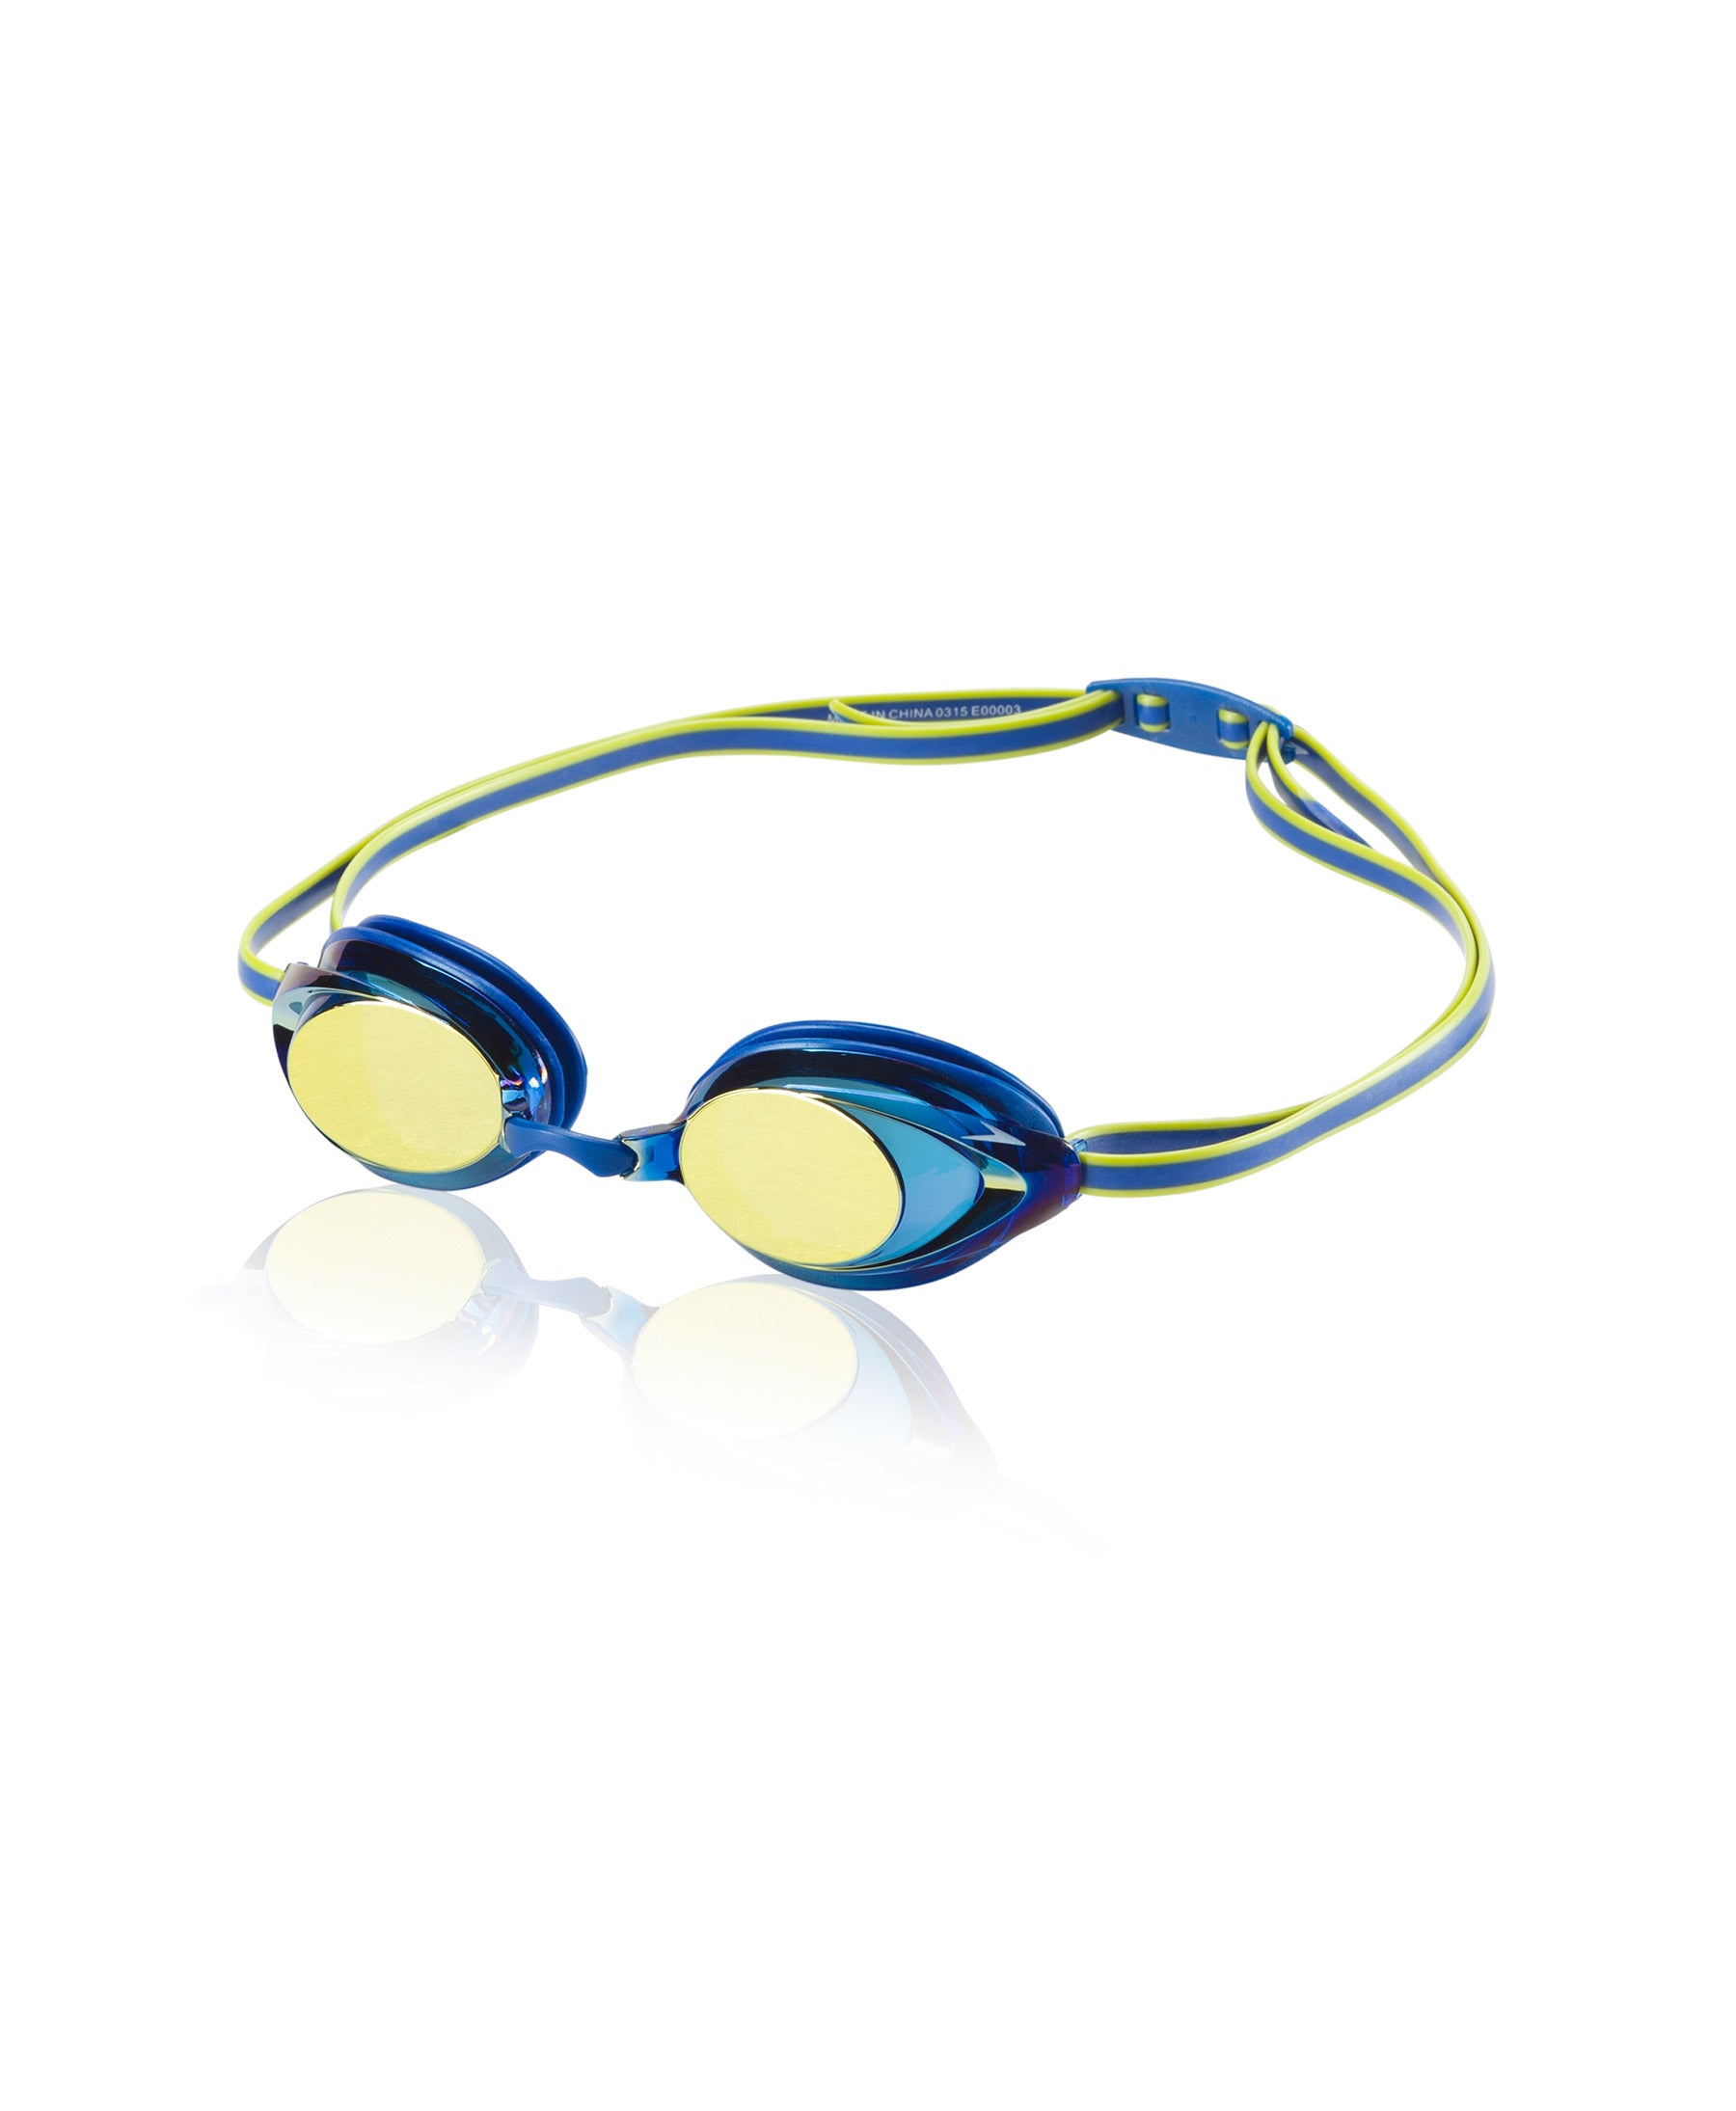 Junior Vanquisher 2.0 Mirrored Swim Goggles - Blue/Yellow